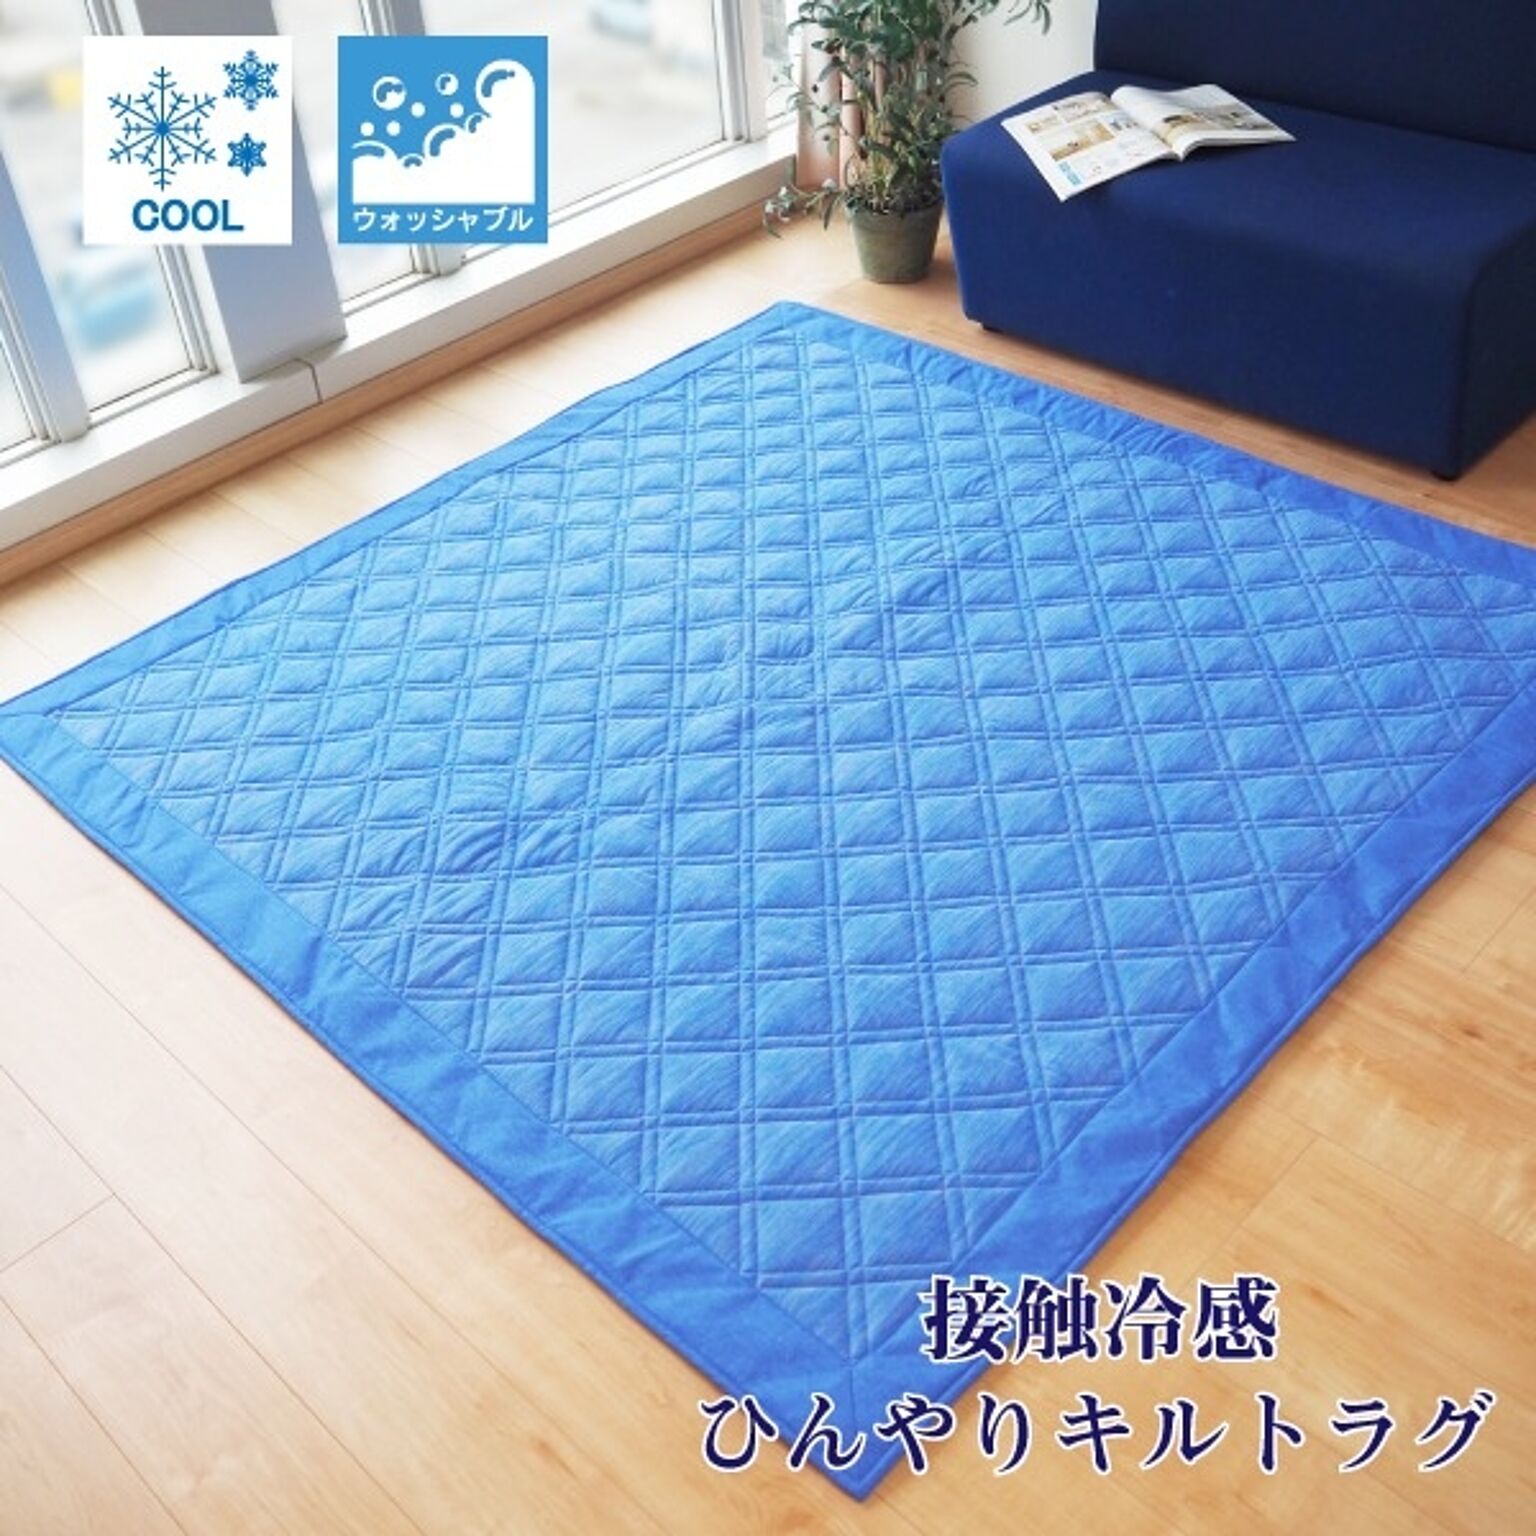 ラグマット 絨毯 約2畳 約180cm×180cm ブルー 洗える お手入れ簡単 COOL 接触冷感 ひんやりラグ リビング ダイニング【代引不可】